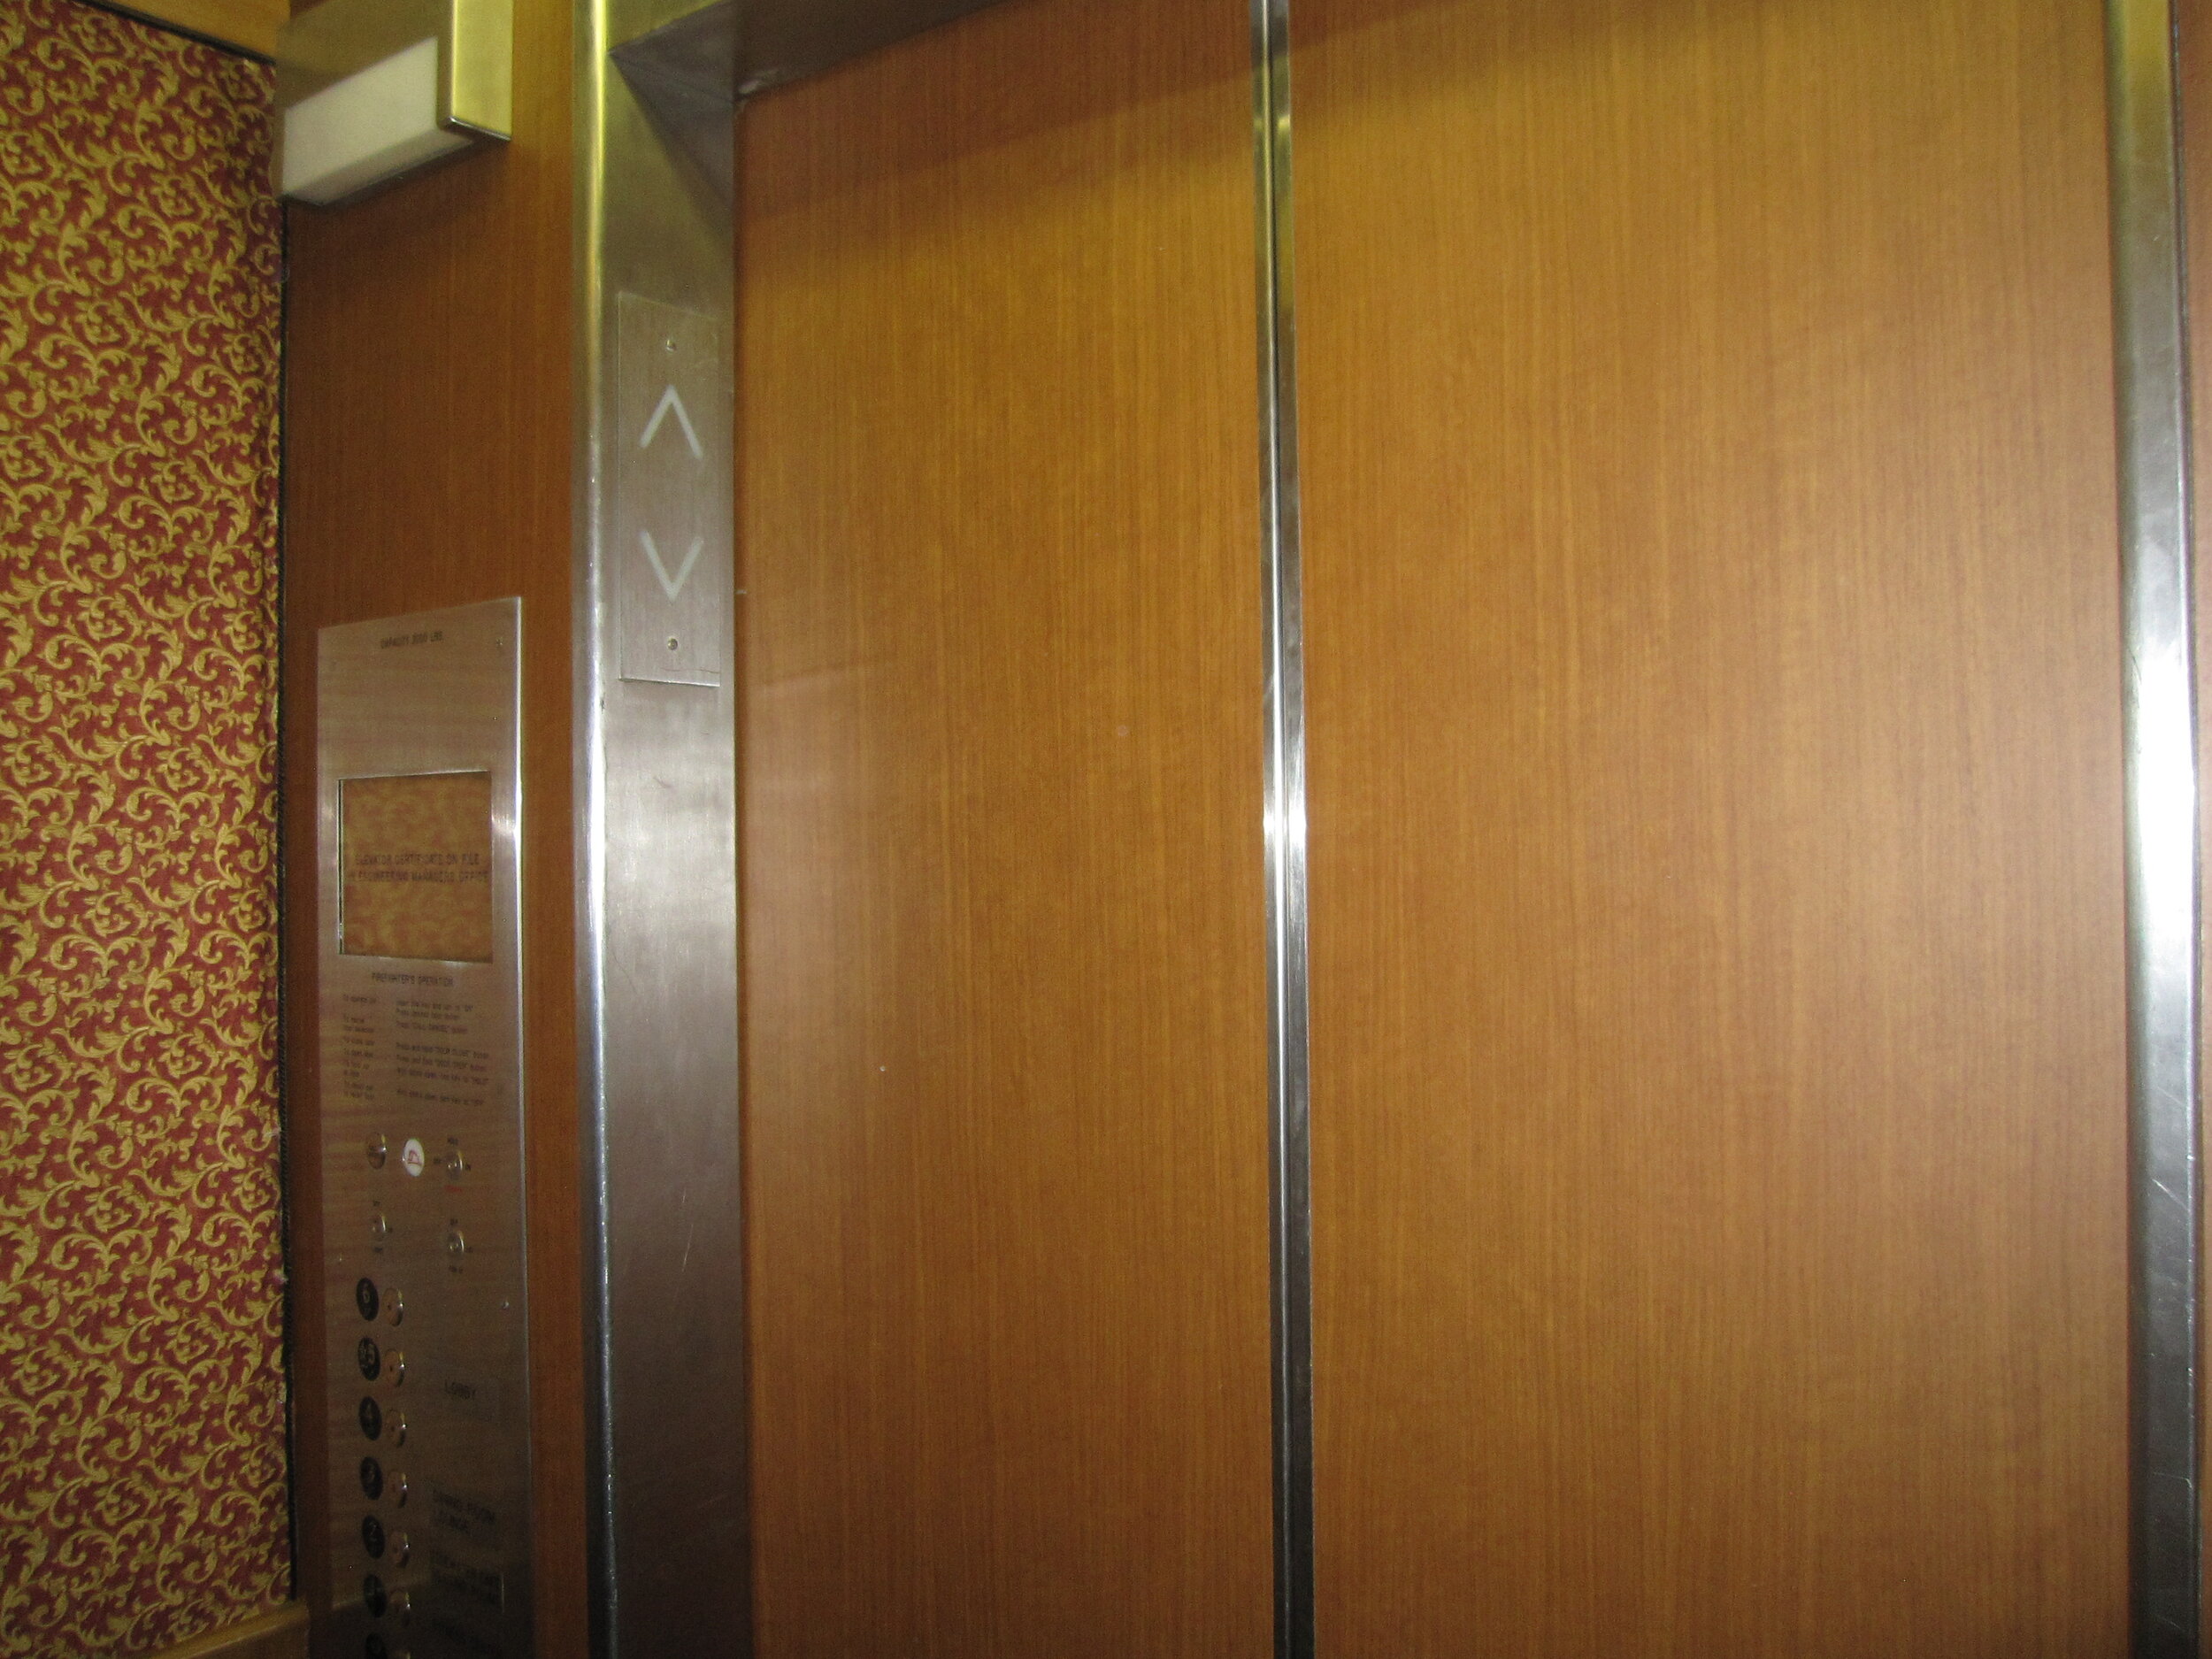 Elevator After